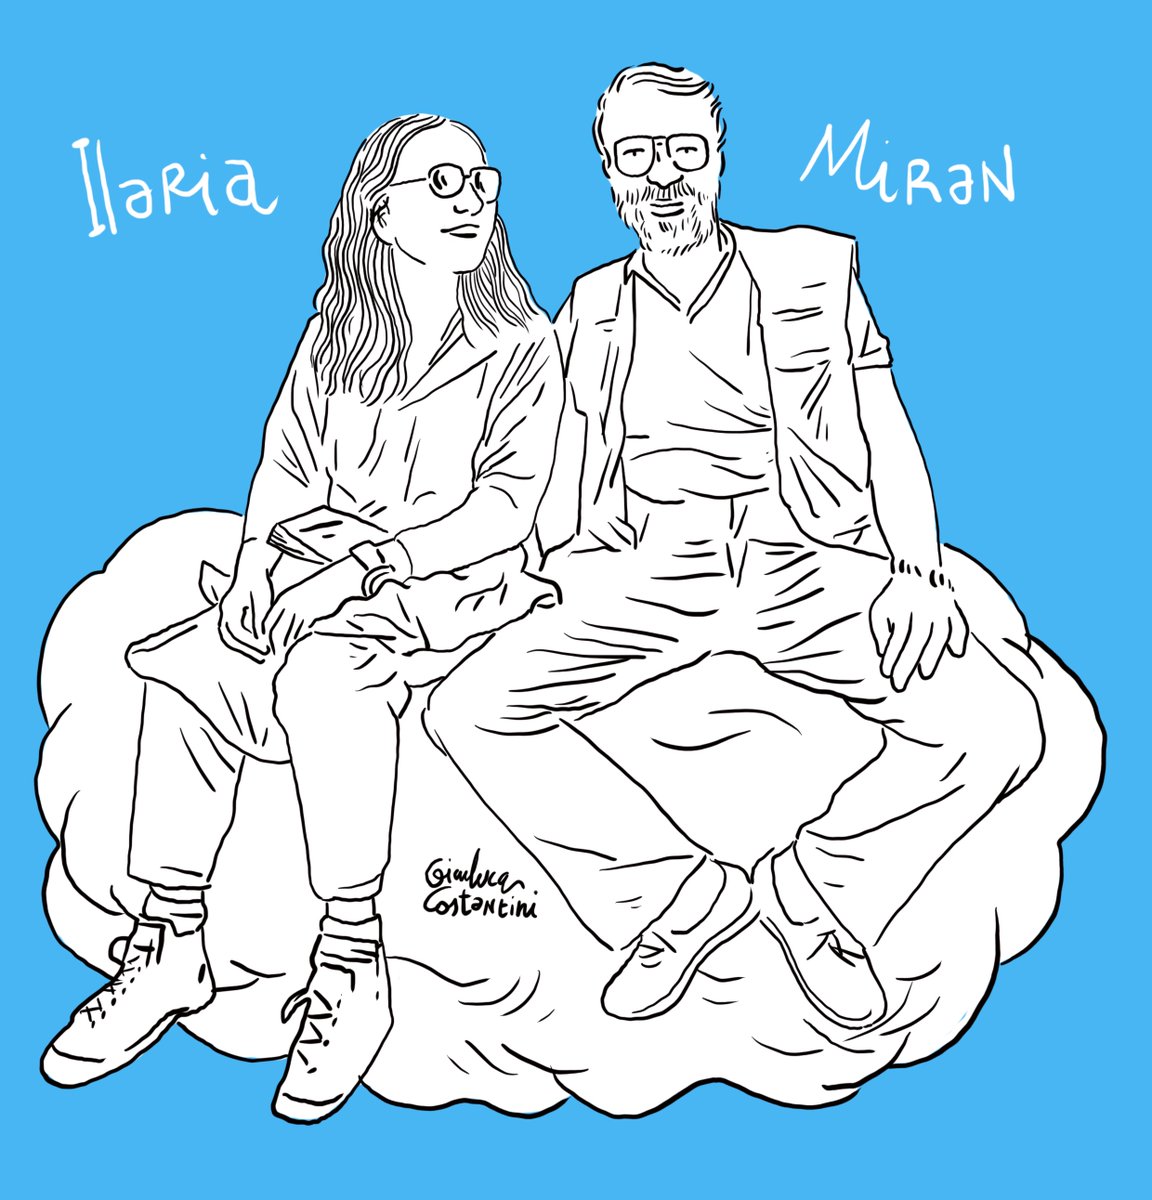 Buon compleanno Ilaria!
Disegno realizzato per Parole Libere 2020
Libera Roma IX 'Ilaria Alpi - Miran Hrovatin' 
#Festival #ParoleLibere2020 #IlariaeMiran